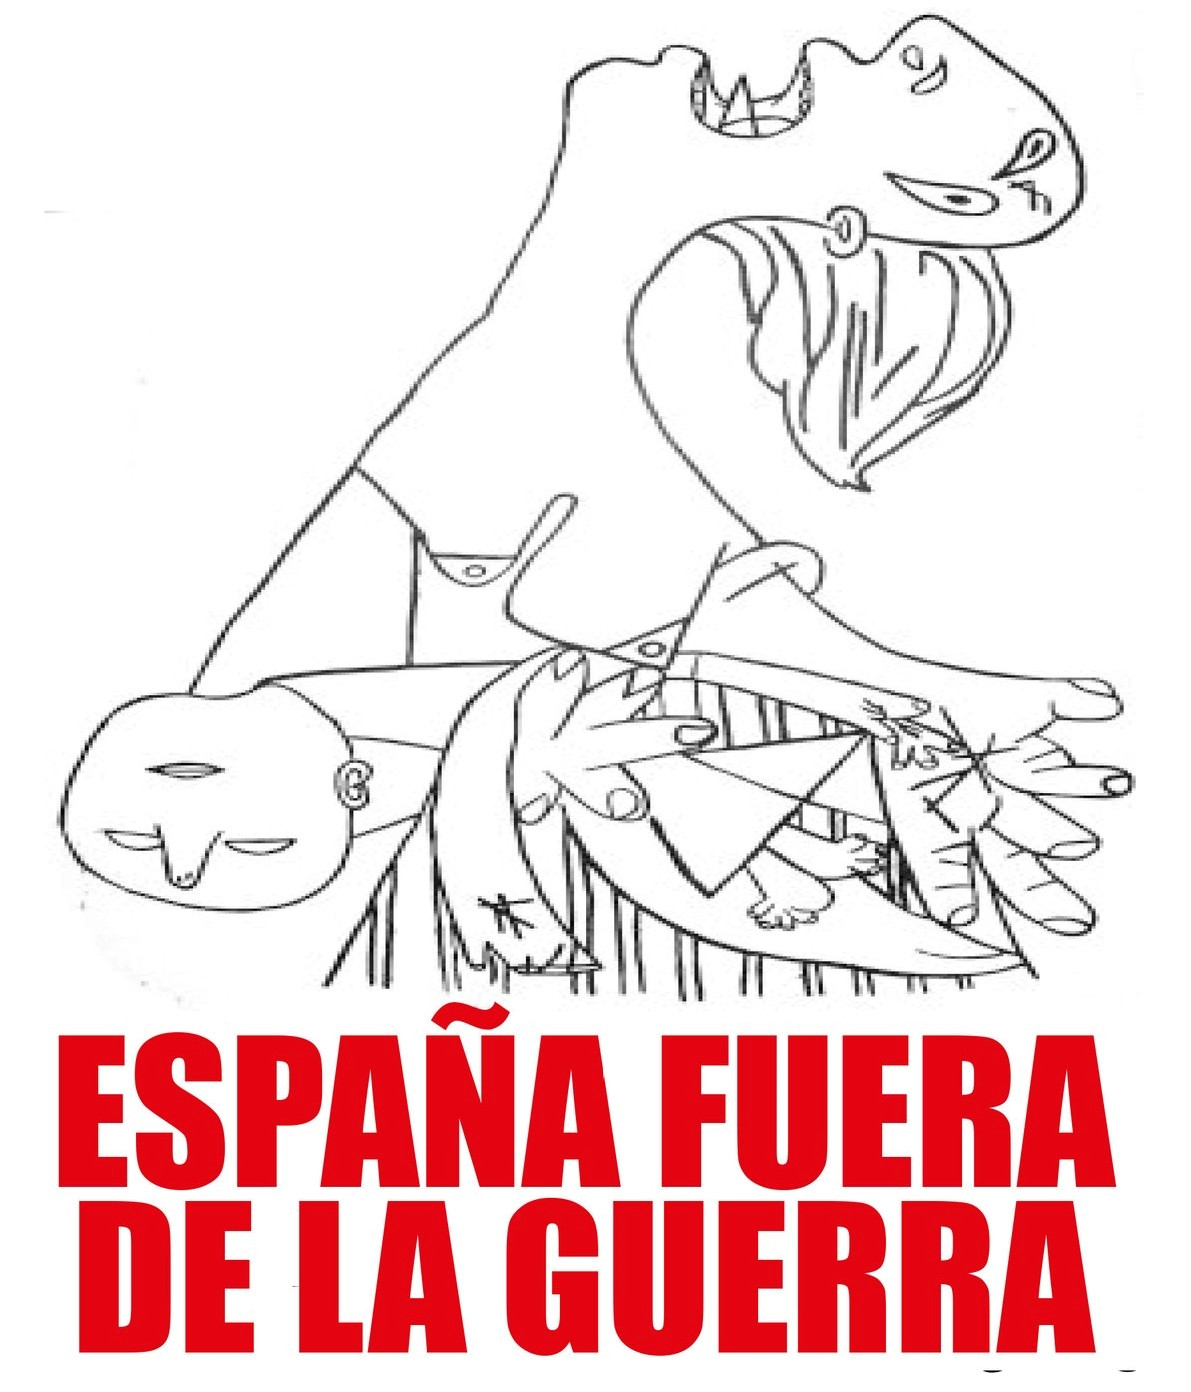 Por la neutralidad de España, no a la guerra